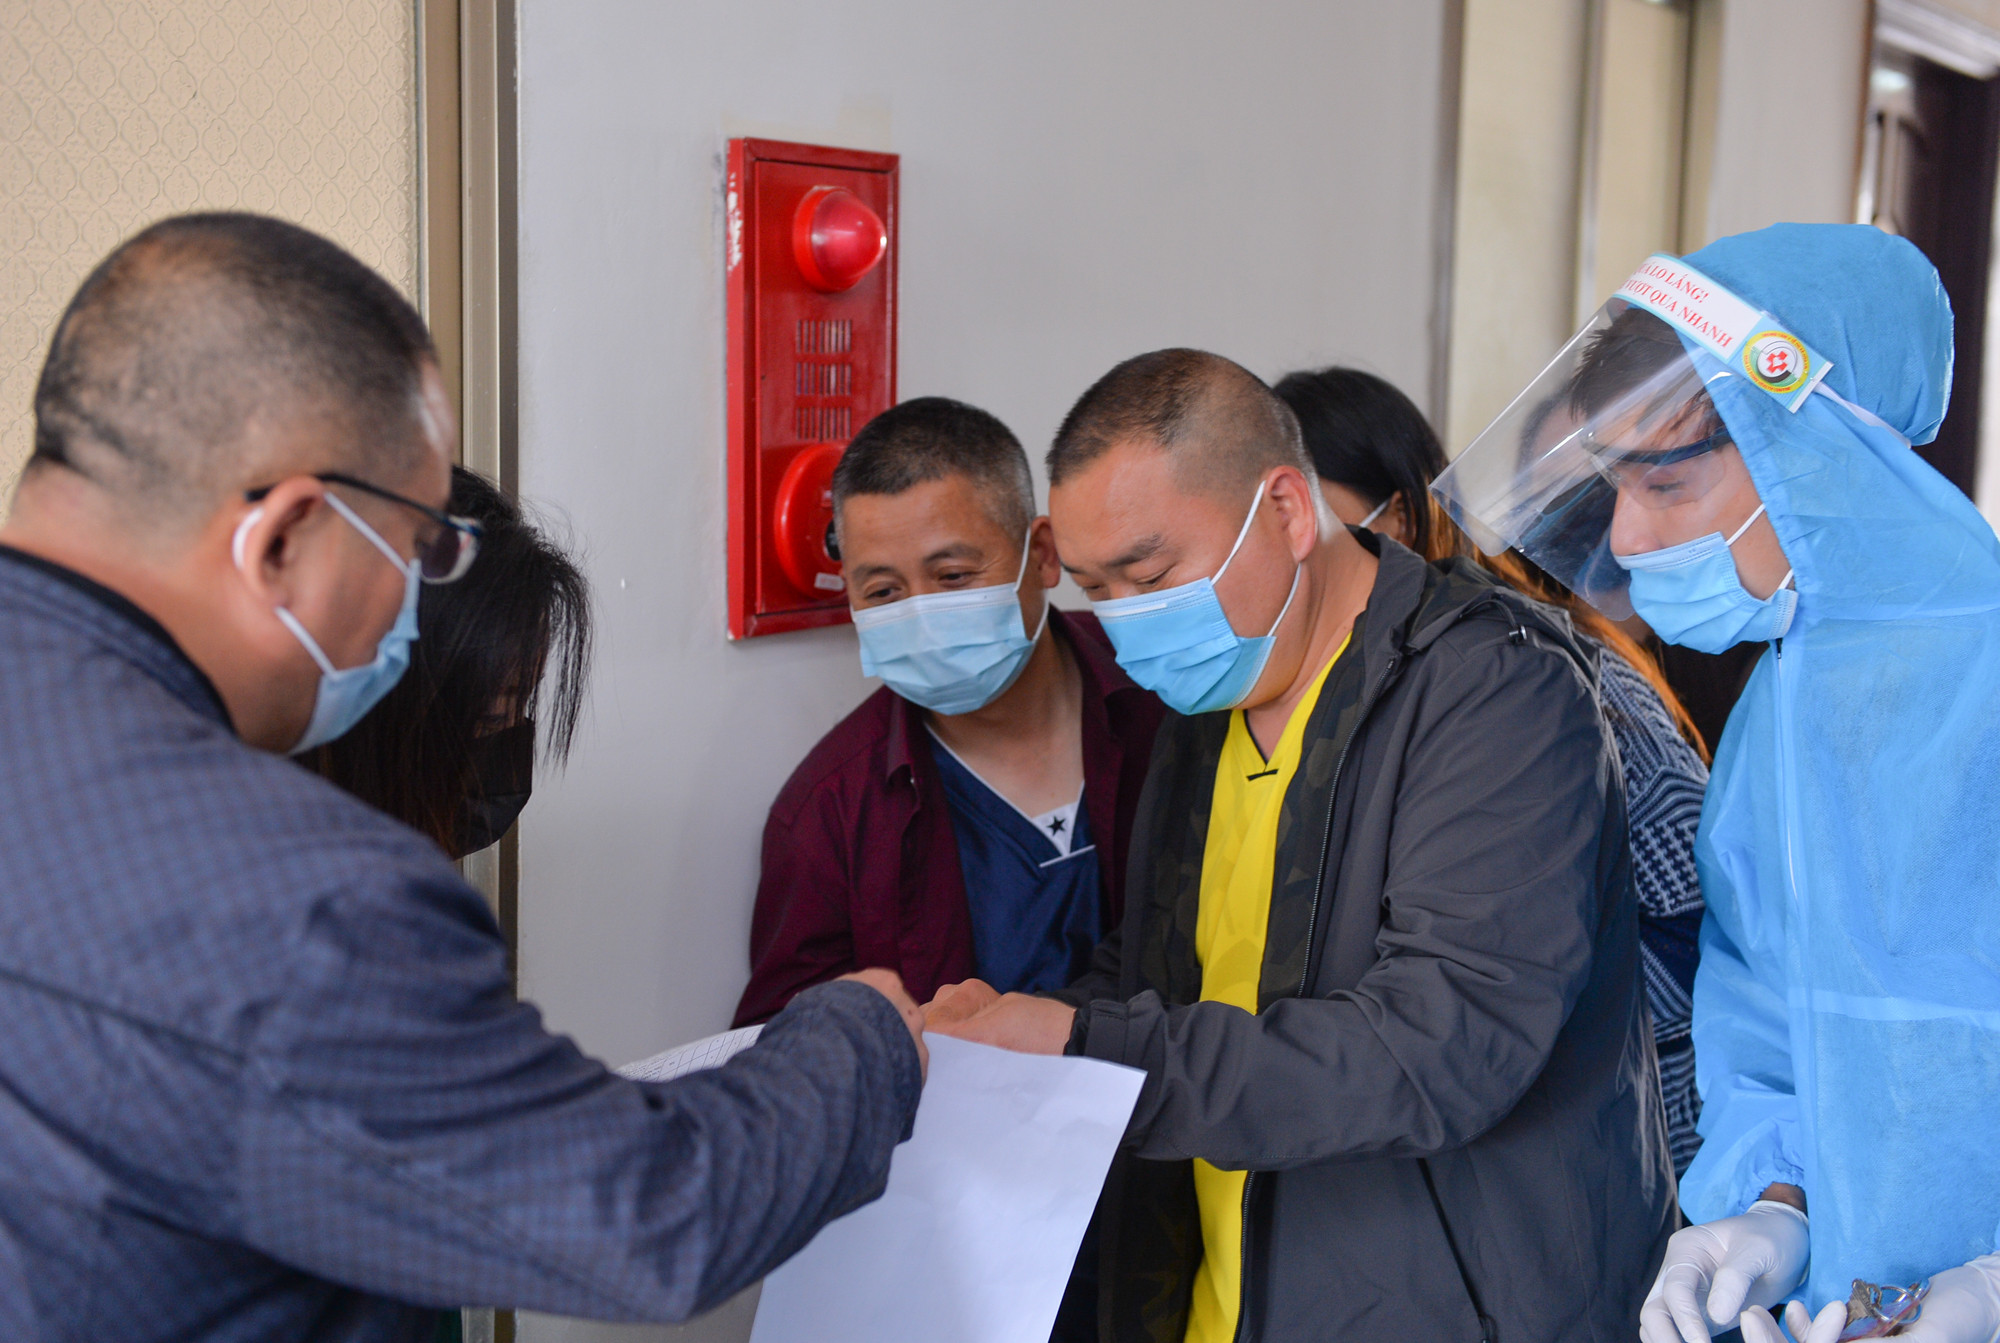 Cán bộ CDC Nghệ An thực hiện khai báo y tế cho các chuyên gia nước ngoài nhập cảnh vào Nghệ An làm việc. Ảnh: Thành Cường